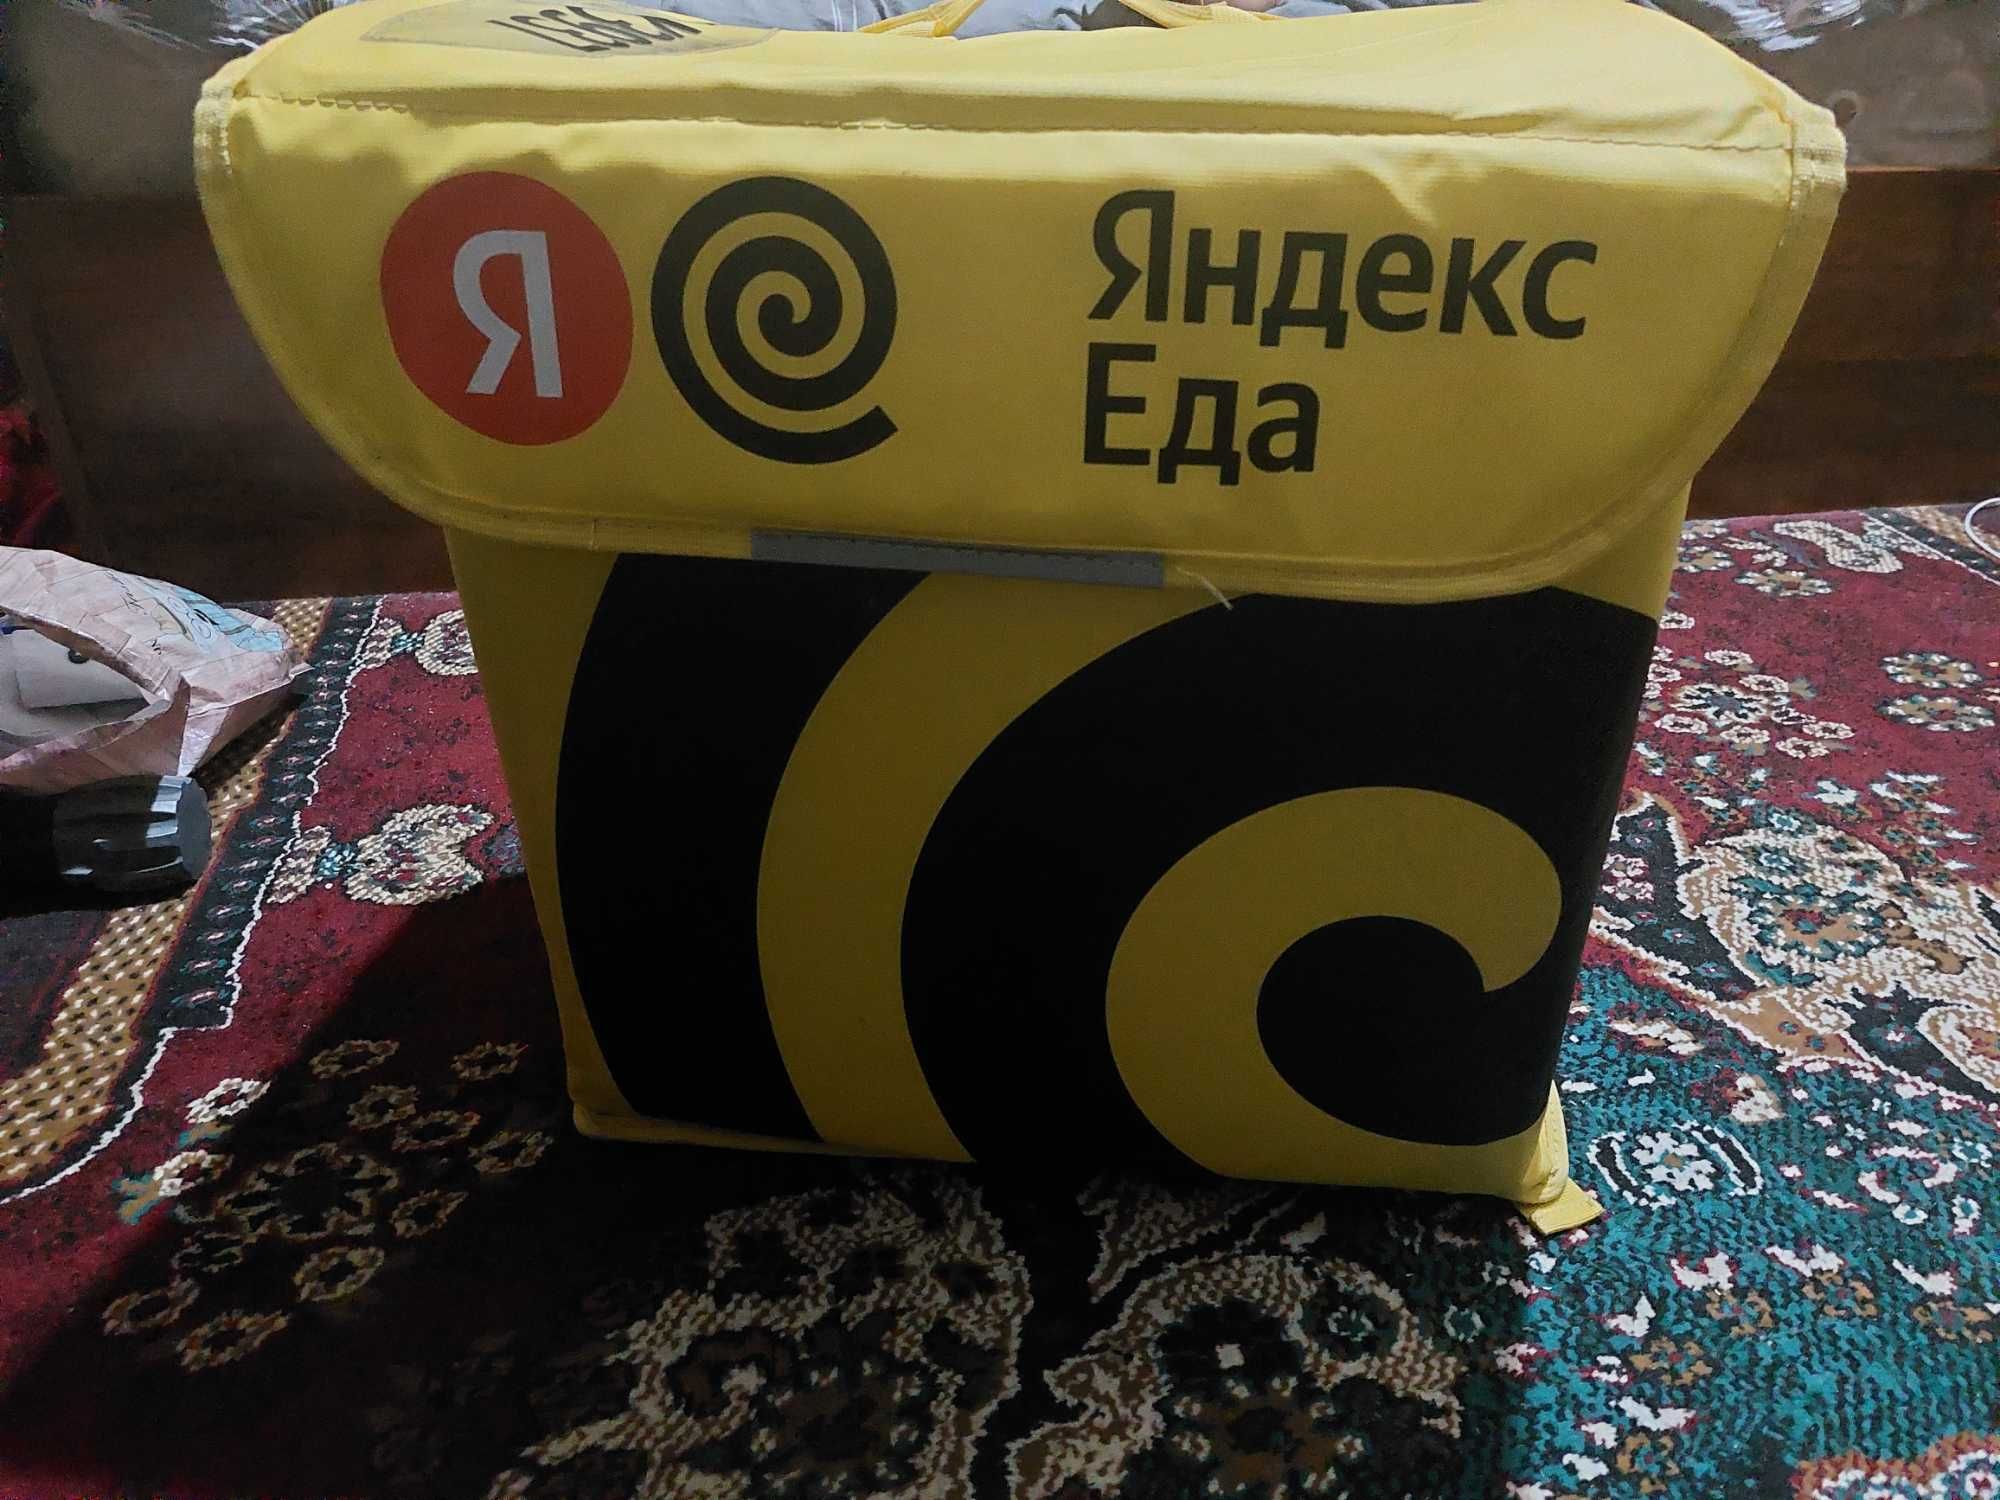 Яндекс термосумкаси сотилади, янги, 250 минг сум